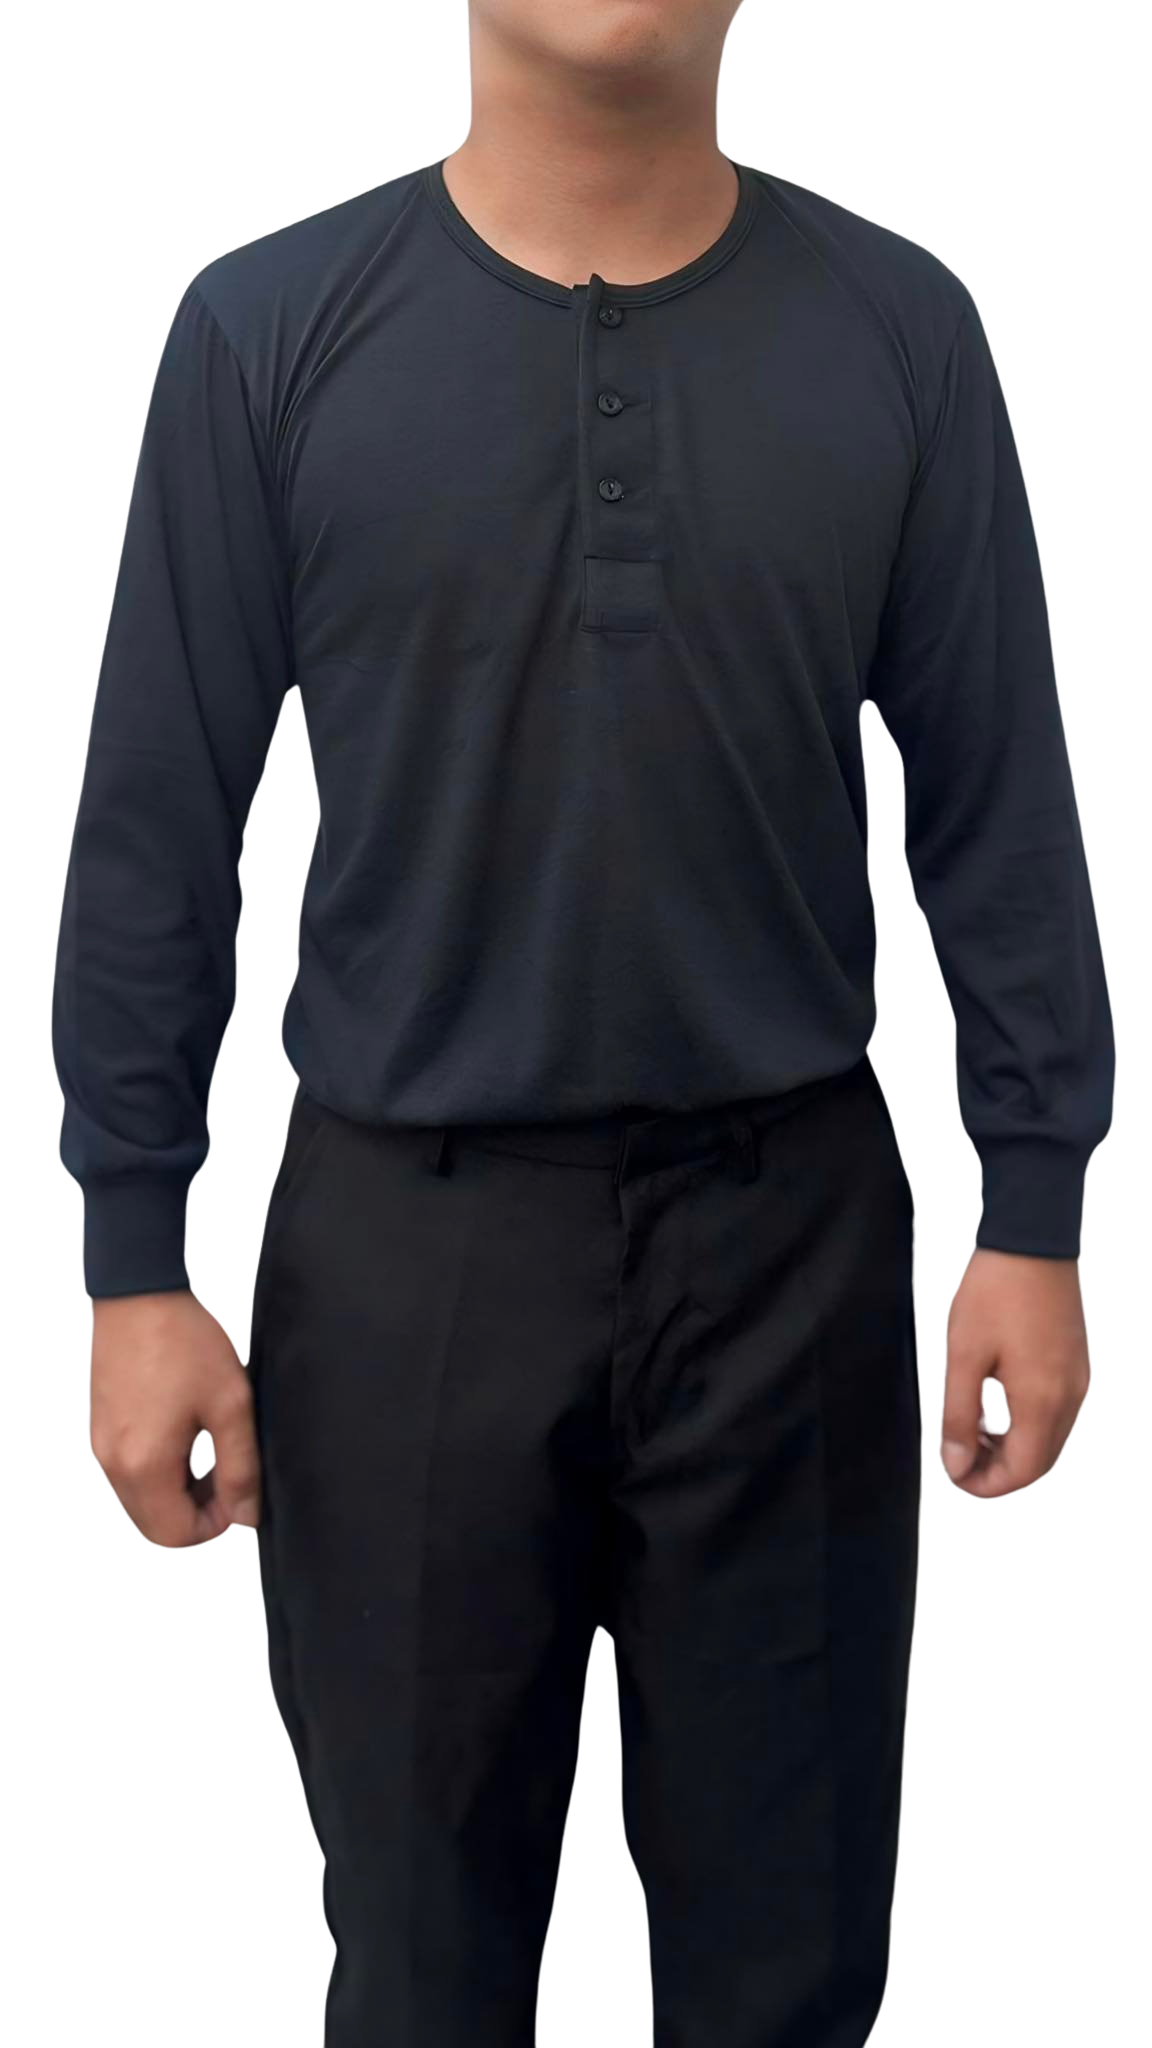 Black Camisa De Chino | Barong Tagalog Undershirt Long Sleeve | JB004